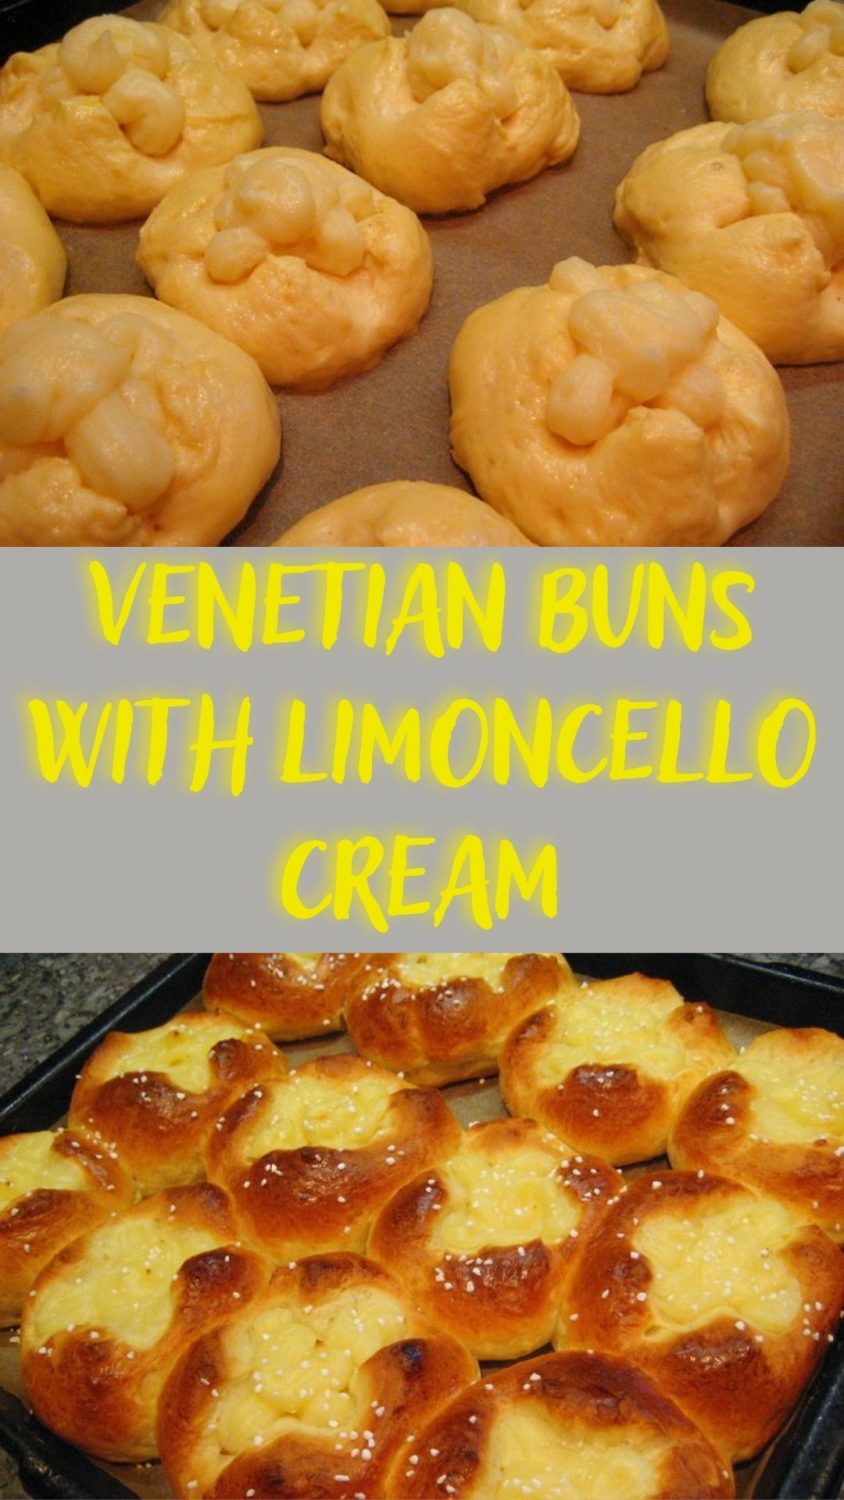 Venetian buns with limoncello cream